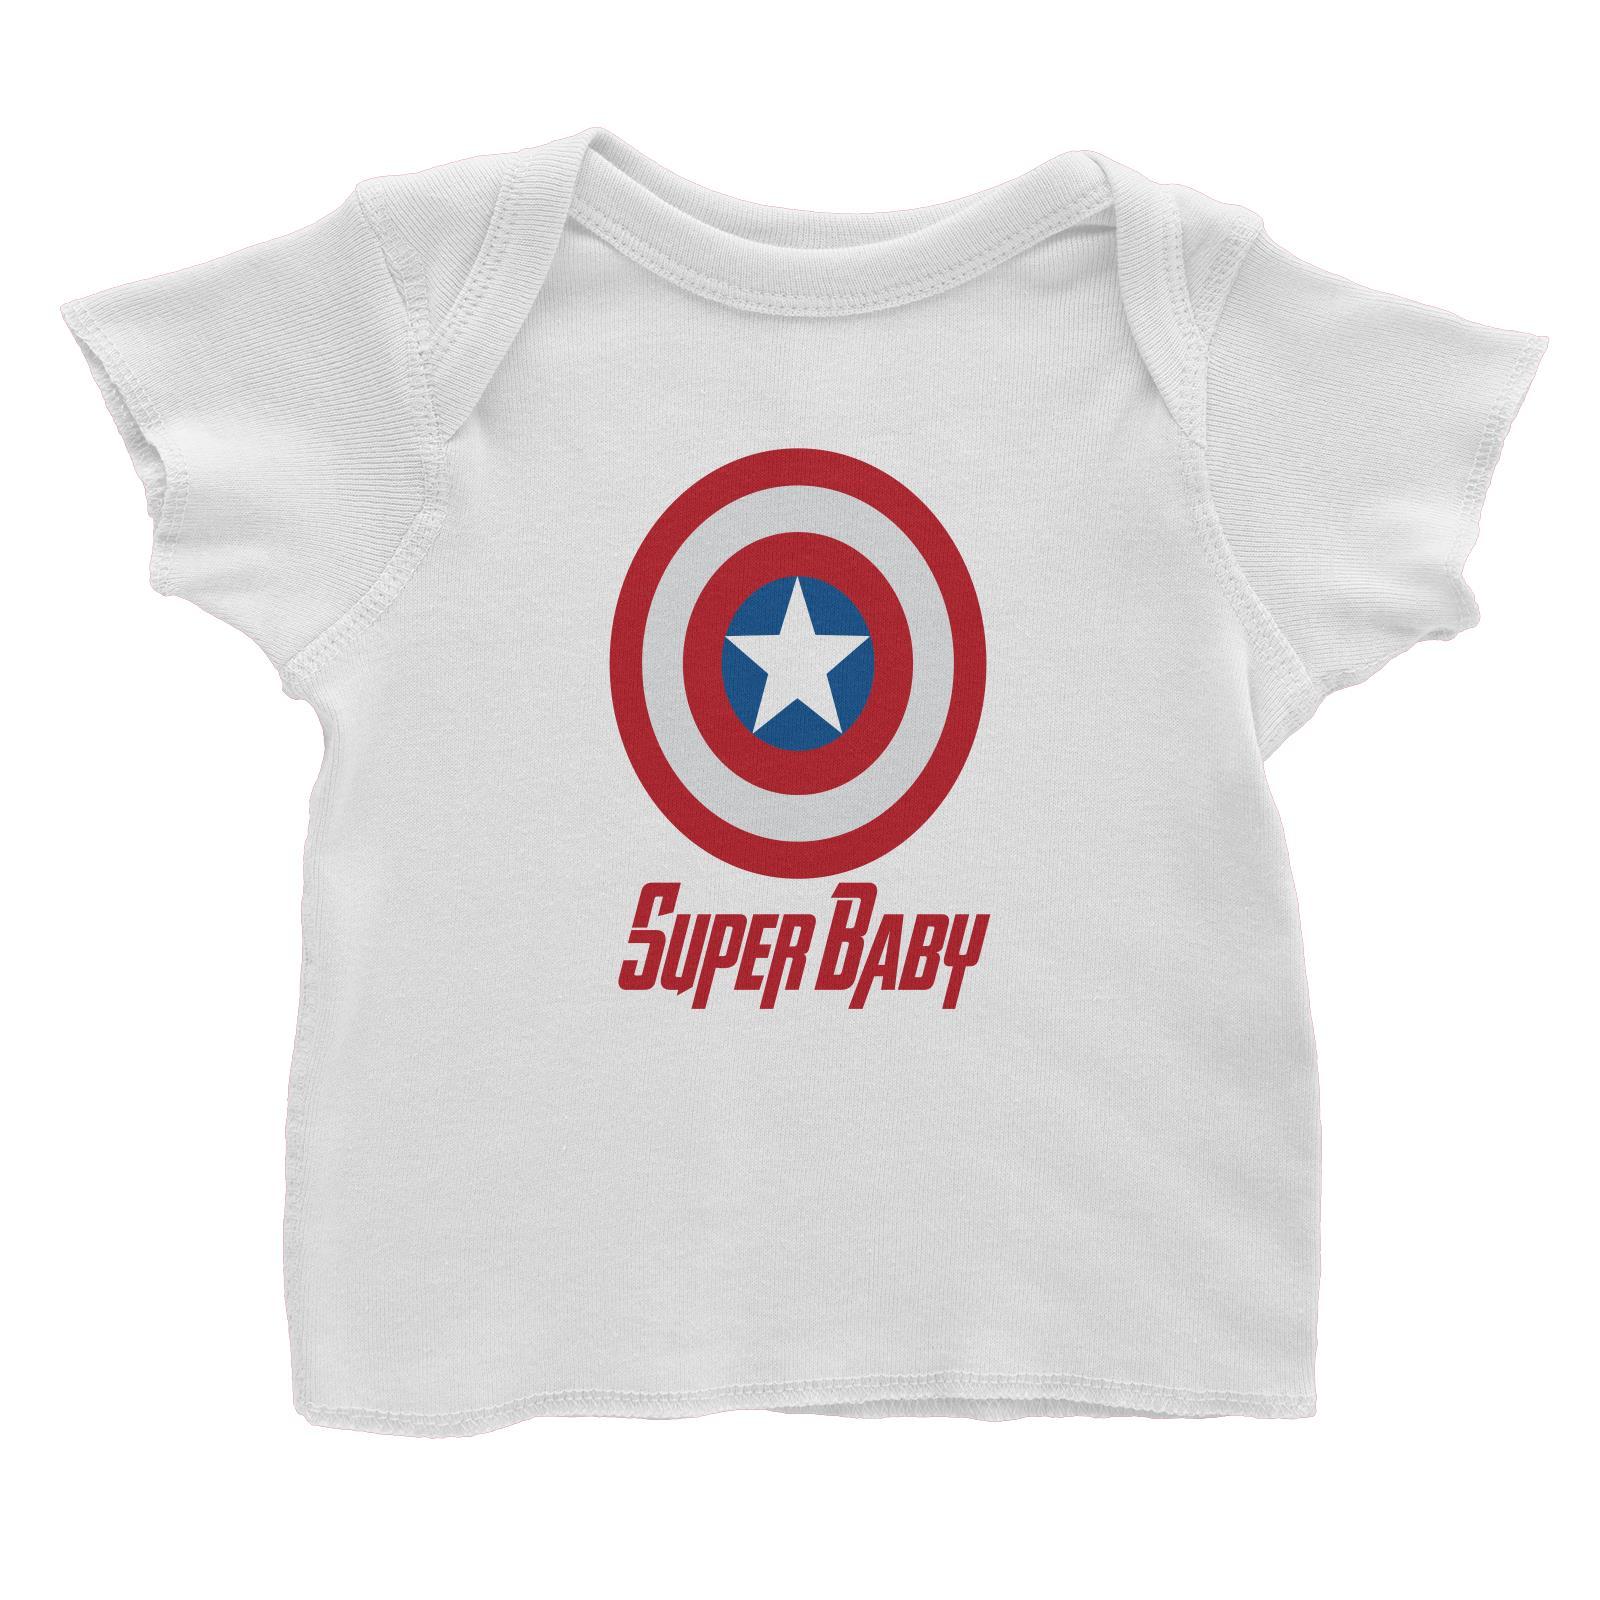 Superhero Shield Super Baby Baby T-Shirt  Matching Family